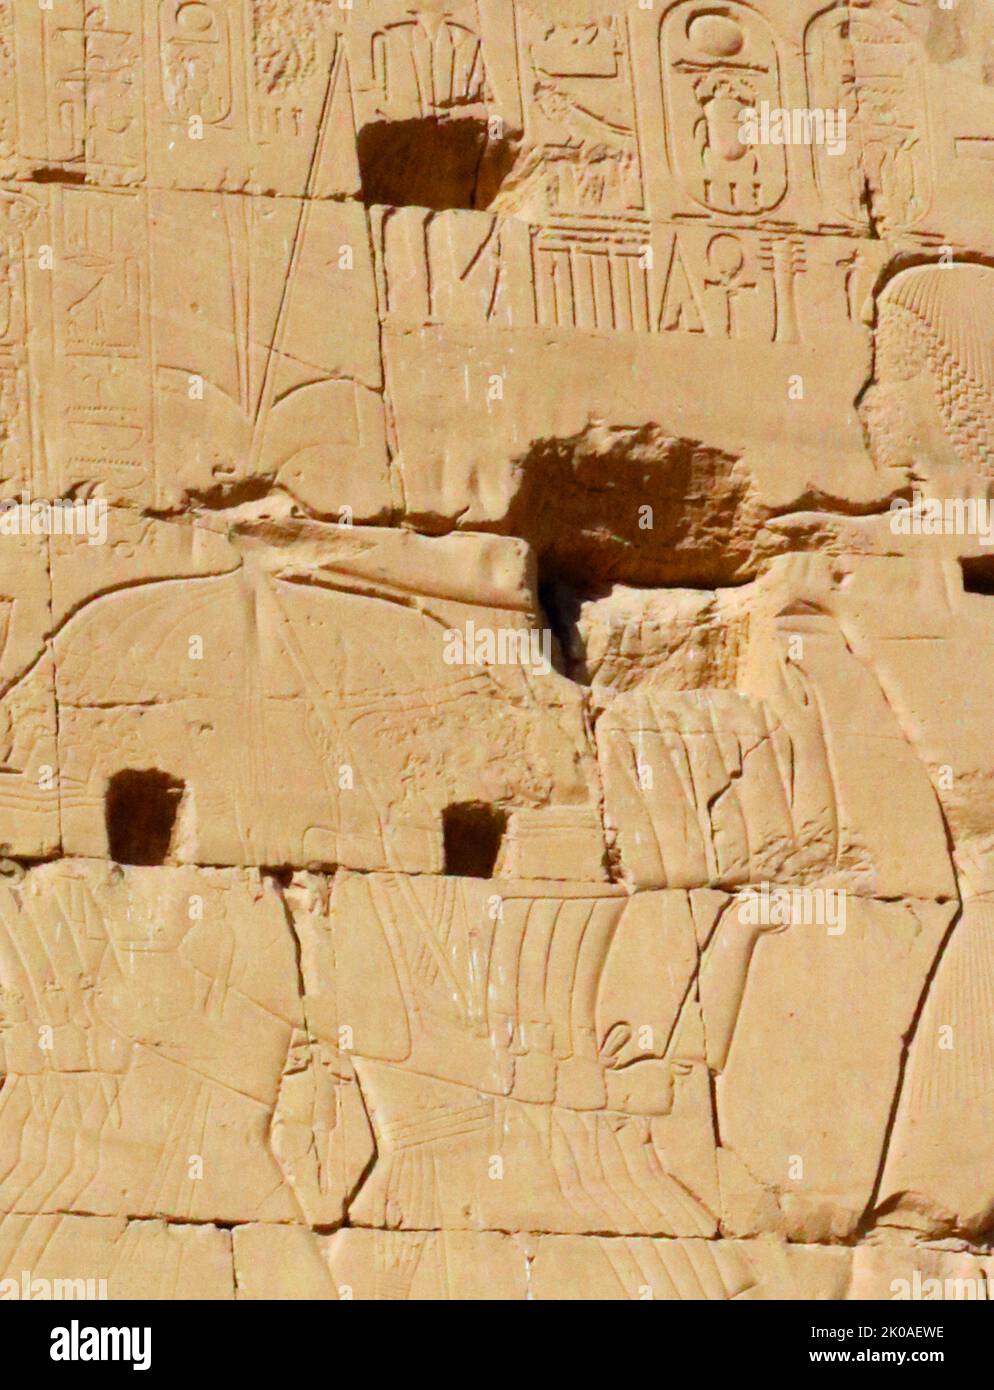 Stèle du règne de Menmaatre Seti I, décrivant ses victoires militaires. 19th dynastie, Temple de Karnak, Égypte, découverte en 2020. SETI était le deuxième pharaon de la dix-neuvième dynastie d'Égypte, pendant la période du Nouveau Royaume, régnant vers 1294 ou 1290 BC à 1279 BC. Il était le fils de Ramsès I et de Sitre, et le père de Ramsès II Banque D'Images